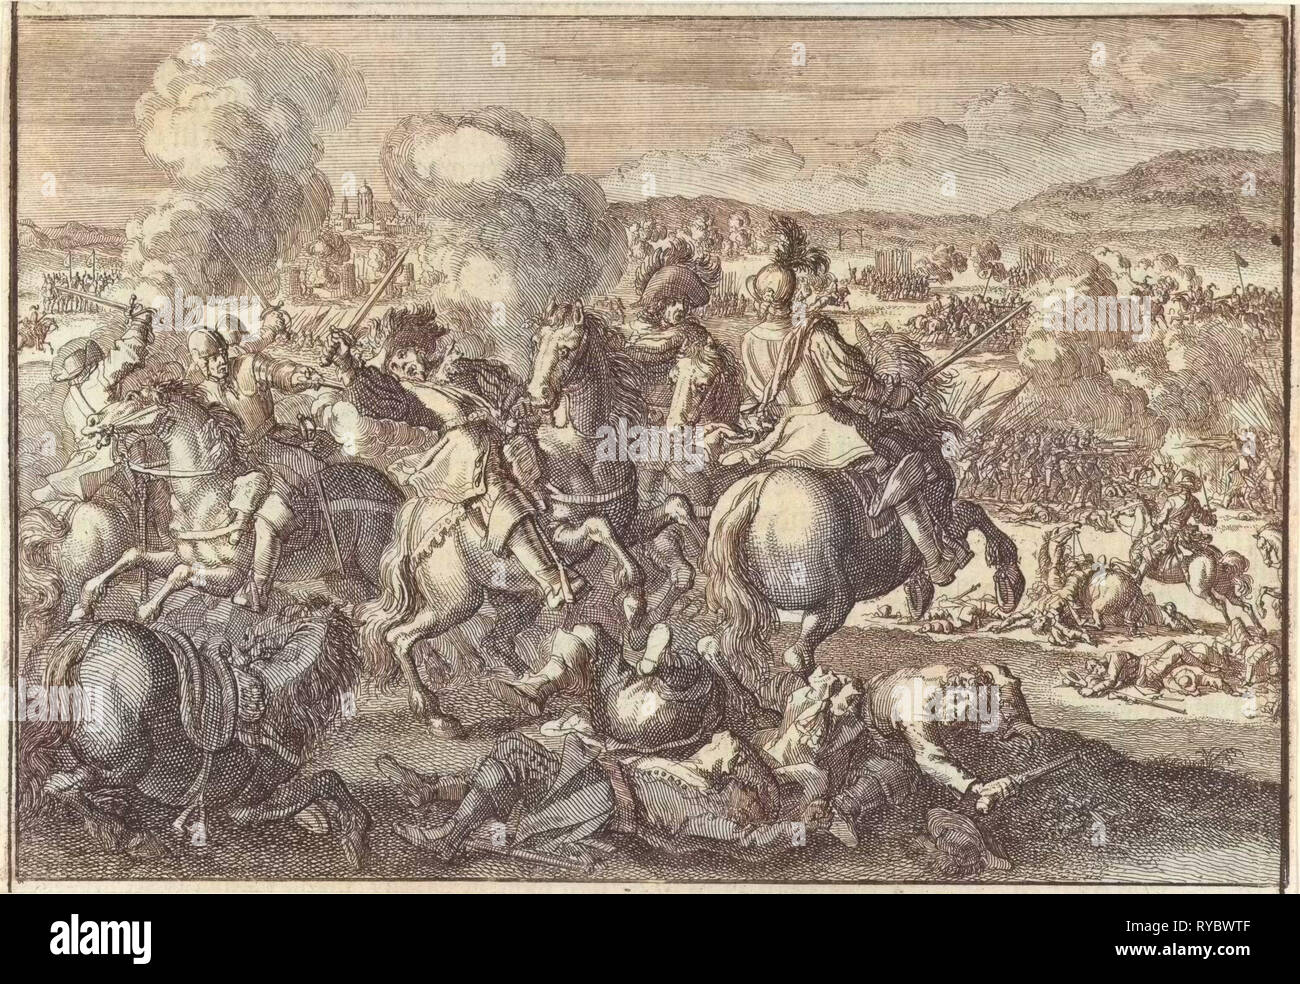 Tod von König Gustav Adolf von Schweden in der Schlacht von Agerola - Amalfi Coast, südwestlich von Leipzig, Deutschland, 1632, Johann David Zunnern, 1701 Stockfoto